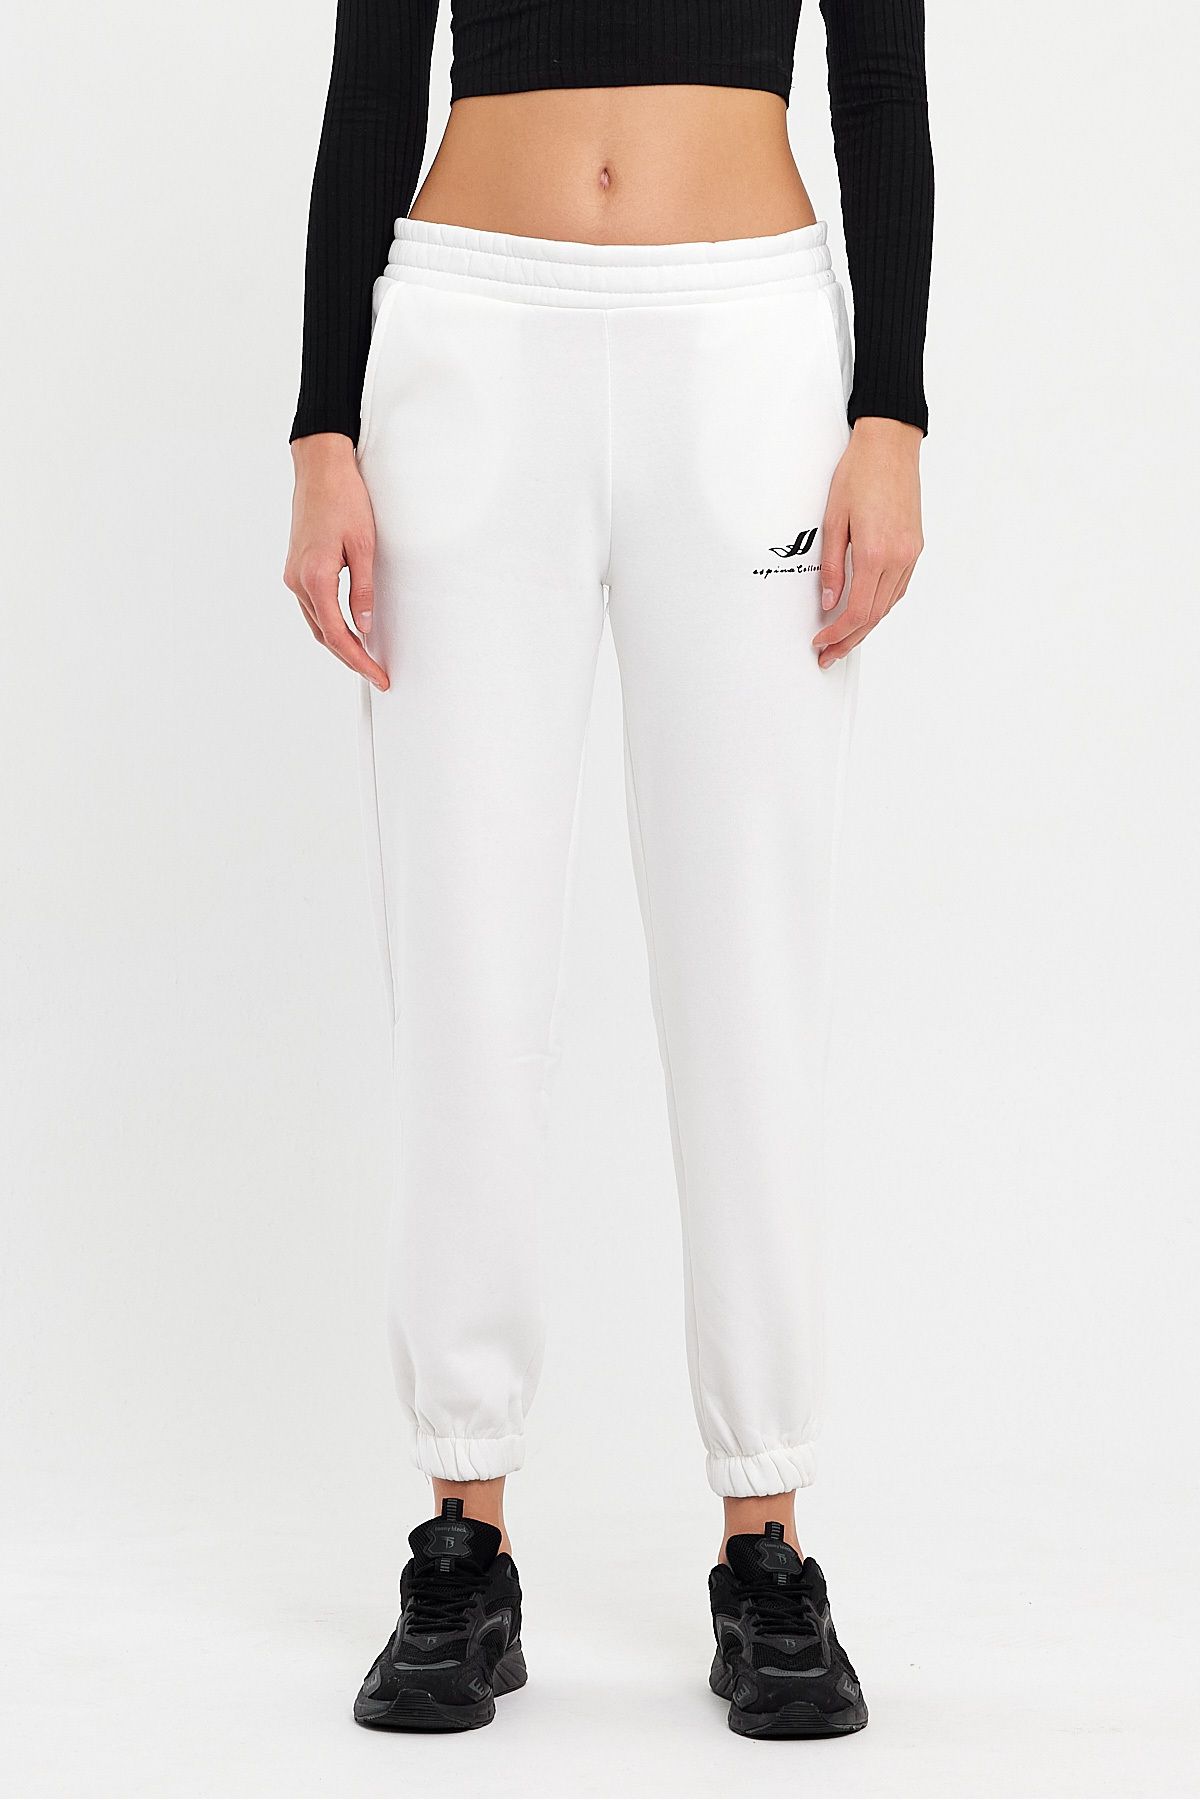 Avones Kadın Logolu Beli Ve Paçası Lastikli Üç Iplik İçi Polarlı Cepli Örme Eşofman Altı Jogger Beyaz